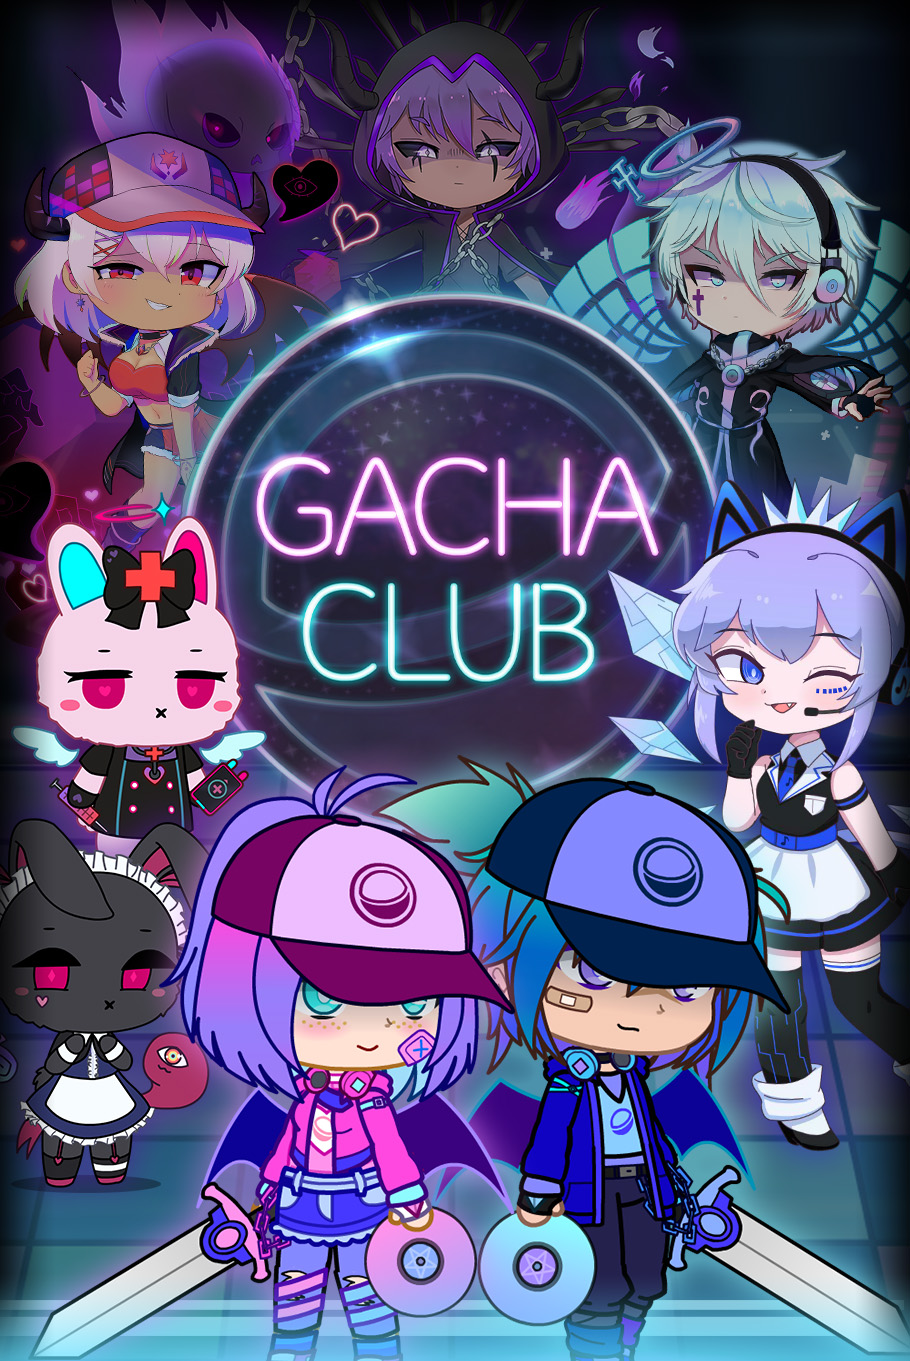 Gacha Club Studio by Lunime